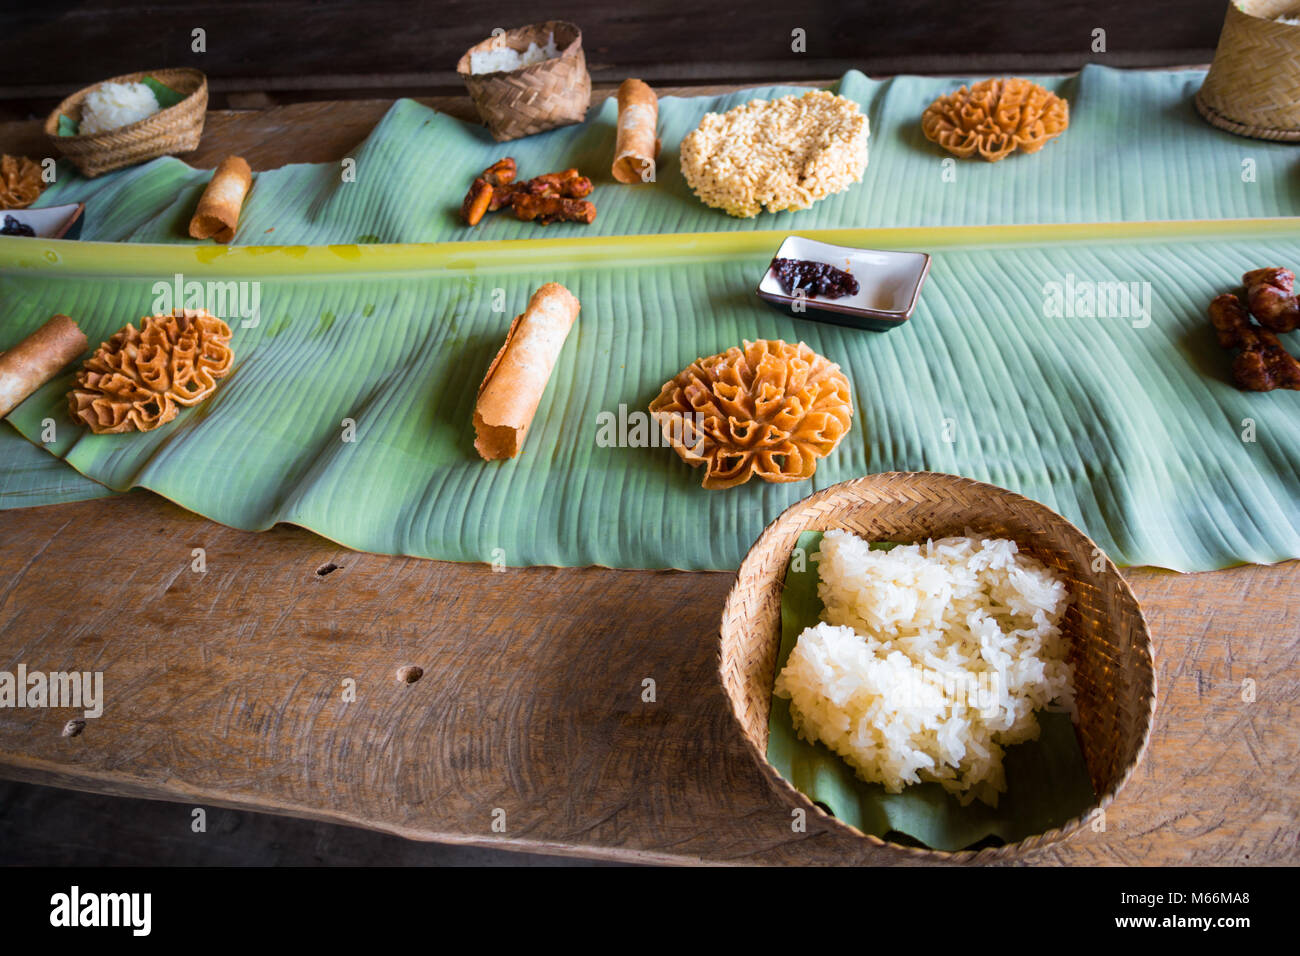 Die laotische Klebriger Reis (genannt "Khao niaow") in vielen köstlichen Art zubereitet werden. Die lebenden Land Bauernhof in Luang Prabang, Laos. Stockfoto